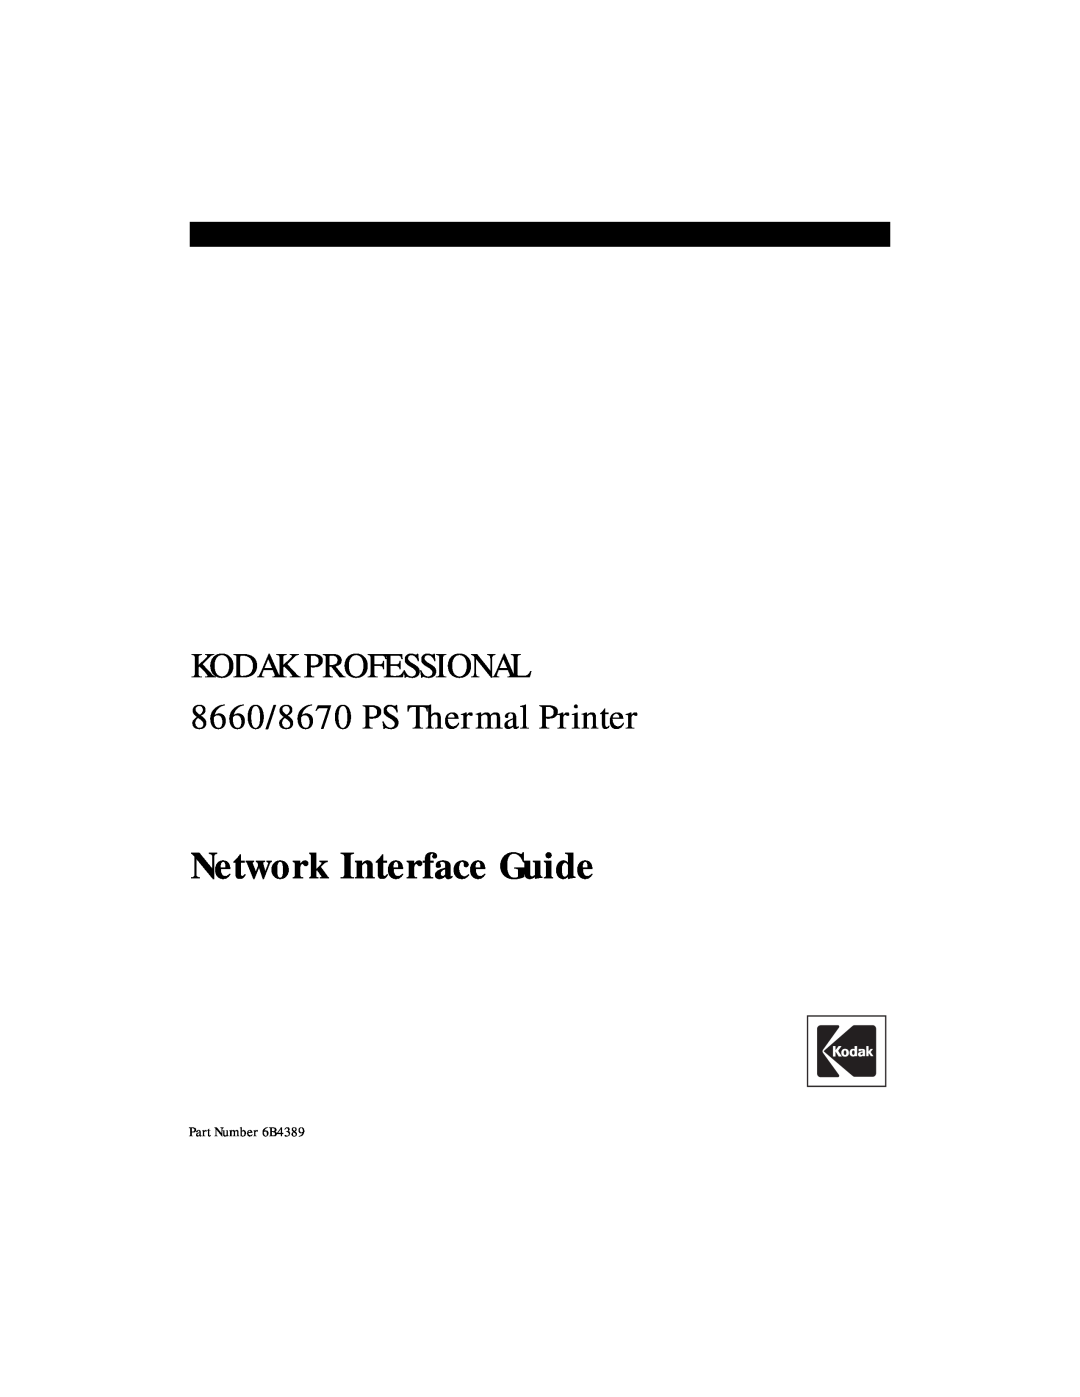 Kodak manual Network Interface Guide, KODAK PROFESSIONAL 8660/8670 PS Thermal Printer, Part Number 6B4389 